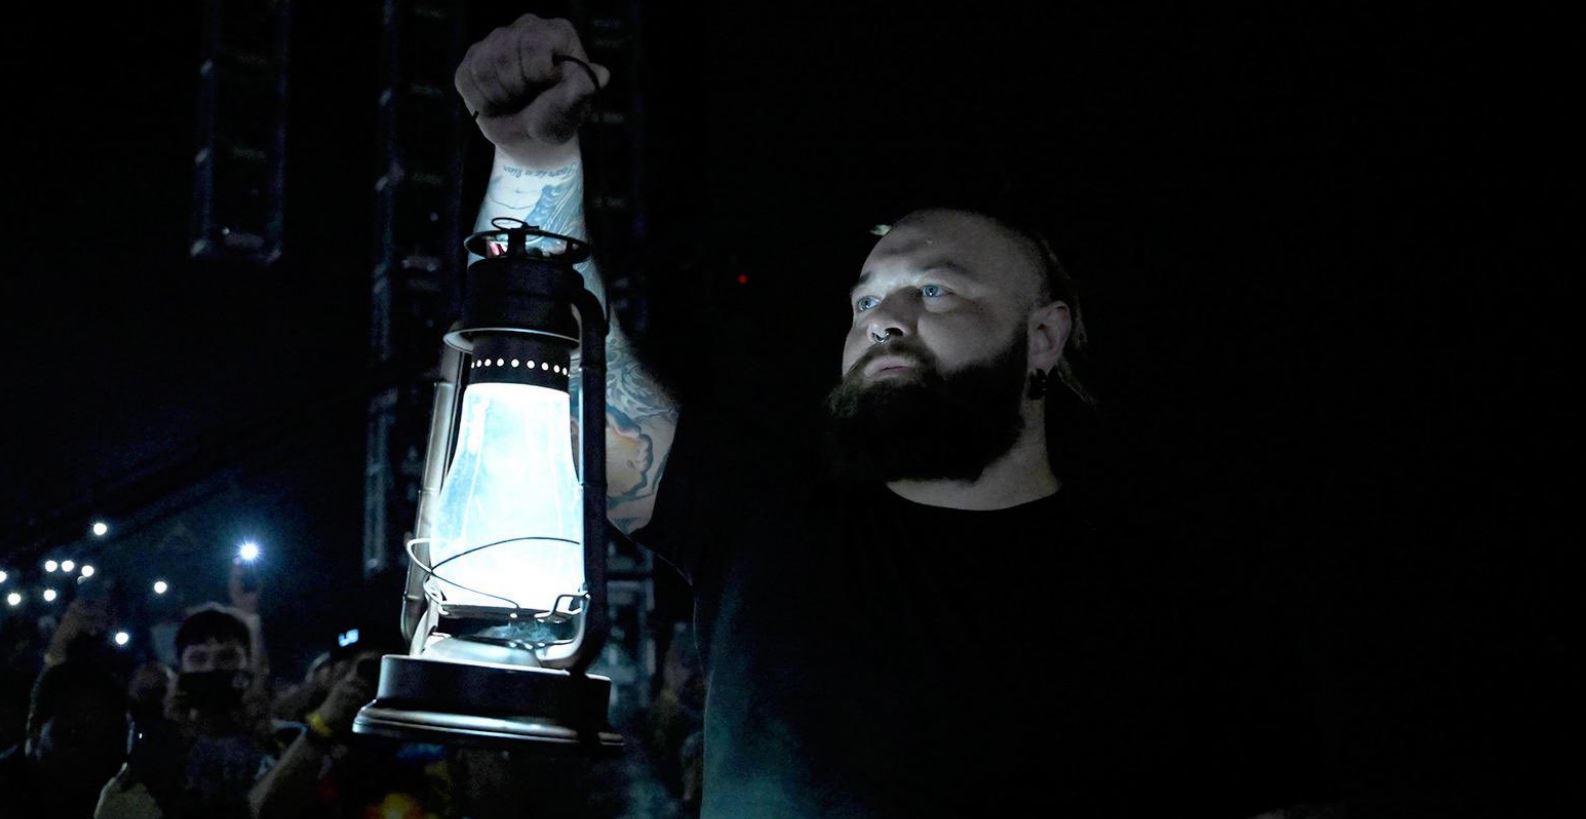 https://wrestlingheadlines.com/wp-content/uploads/2023/08/bray-wyatt-lantern.jpg